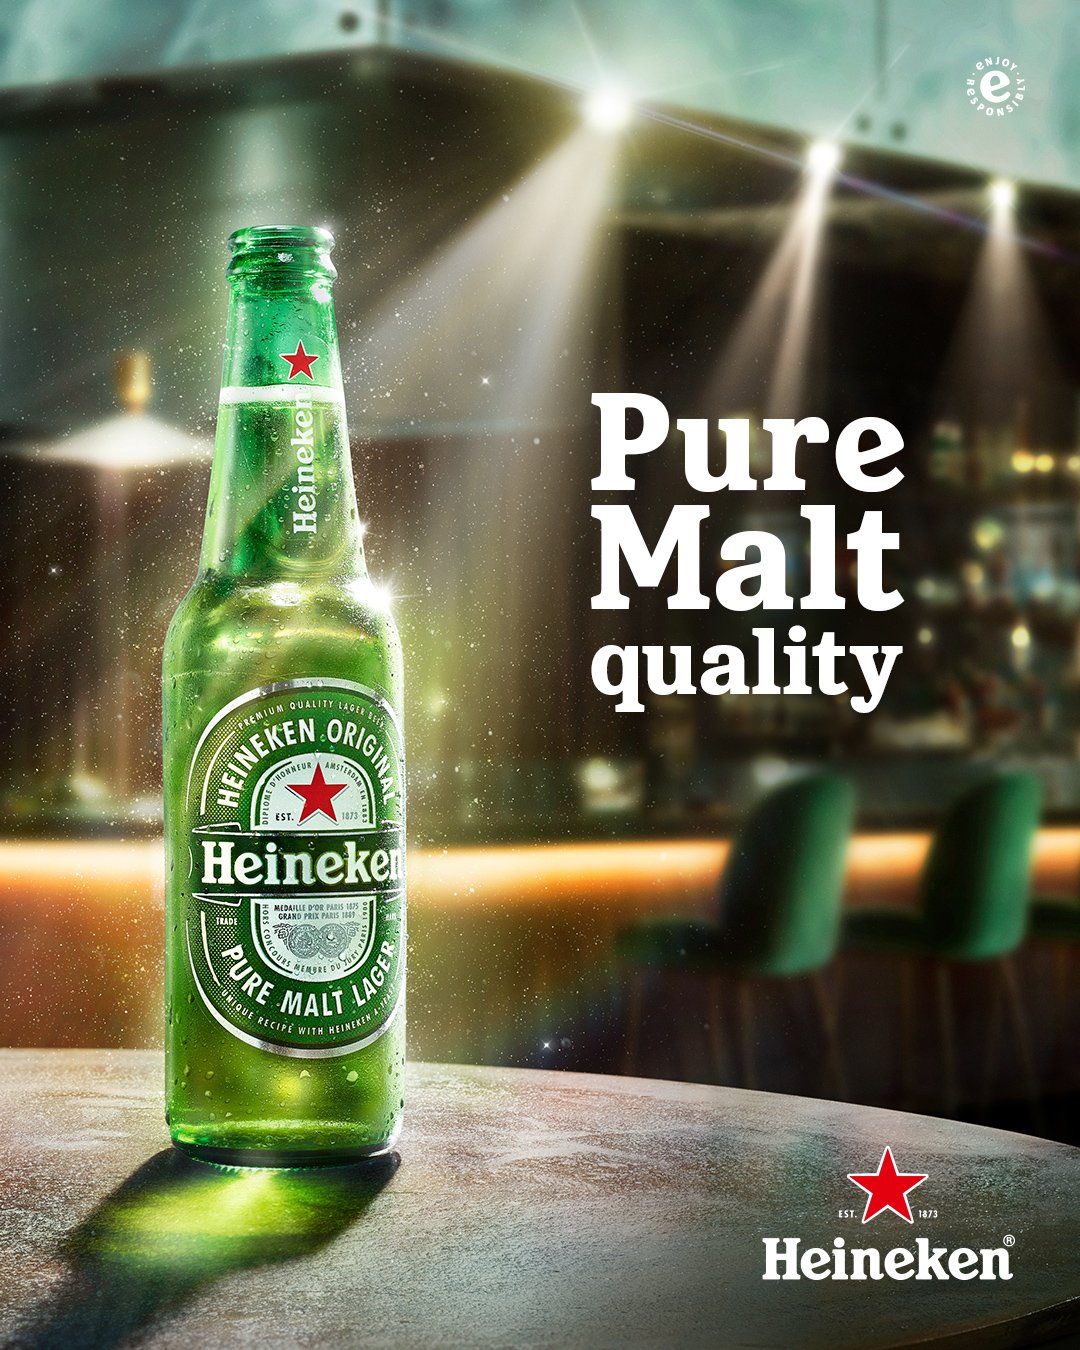 Heineken_Always On_Pure Malt_Bar_Original_NT_Still_4x5_Digital_Global.jpg